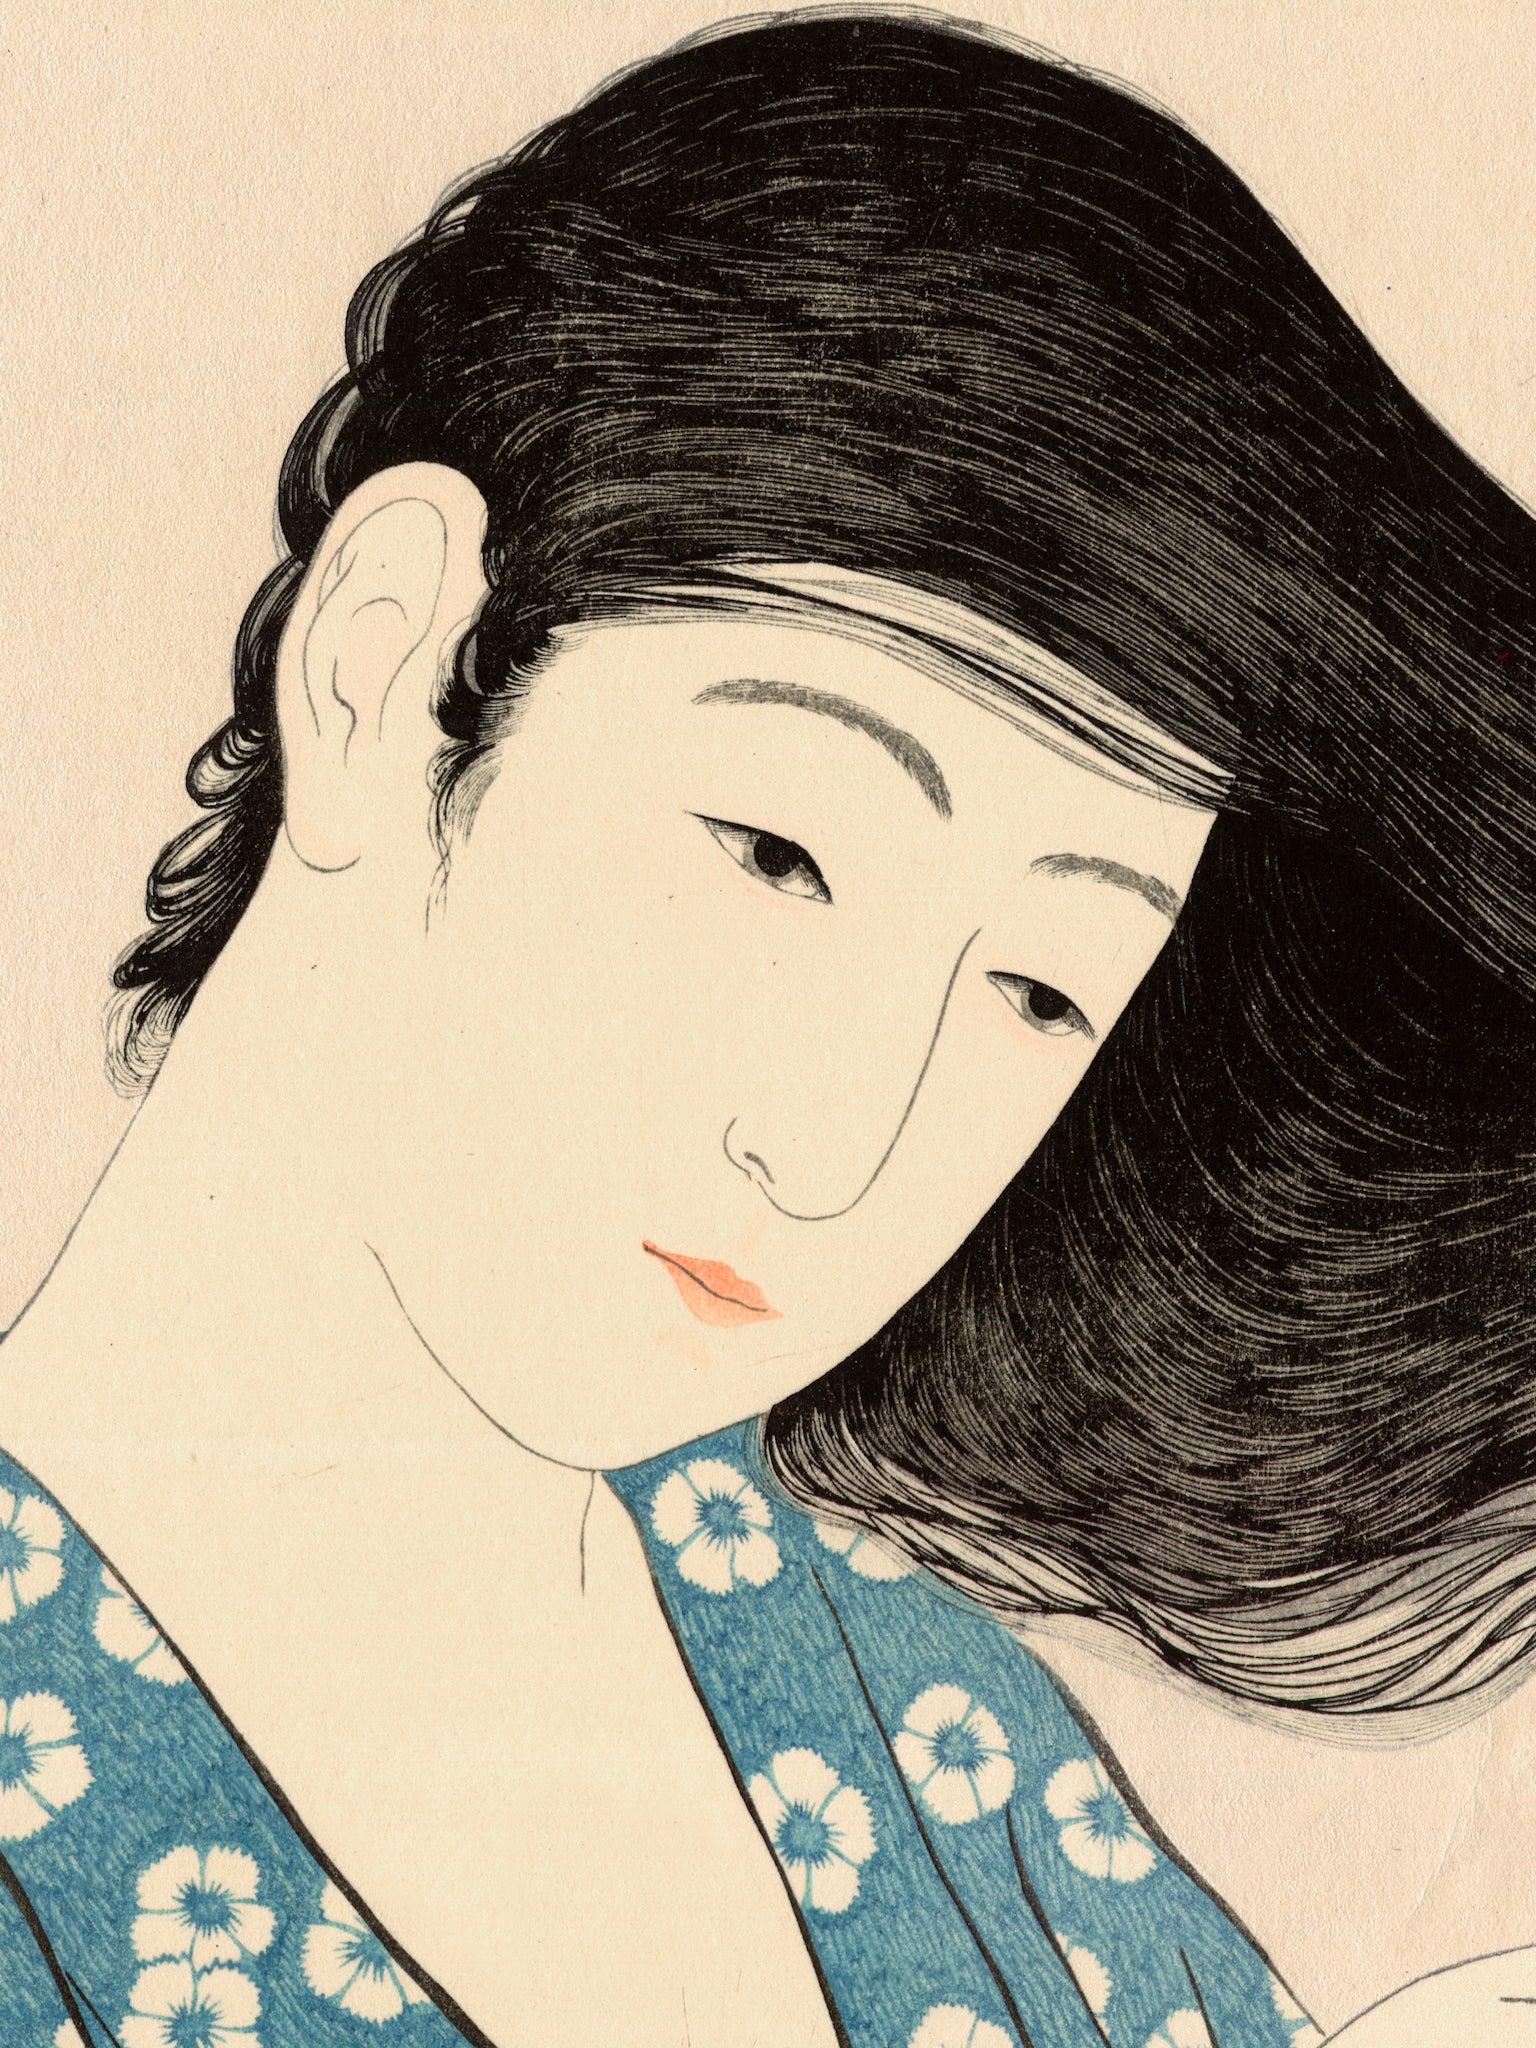 Estampe japonaise détail de l’estampe visage et cheveux